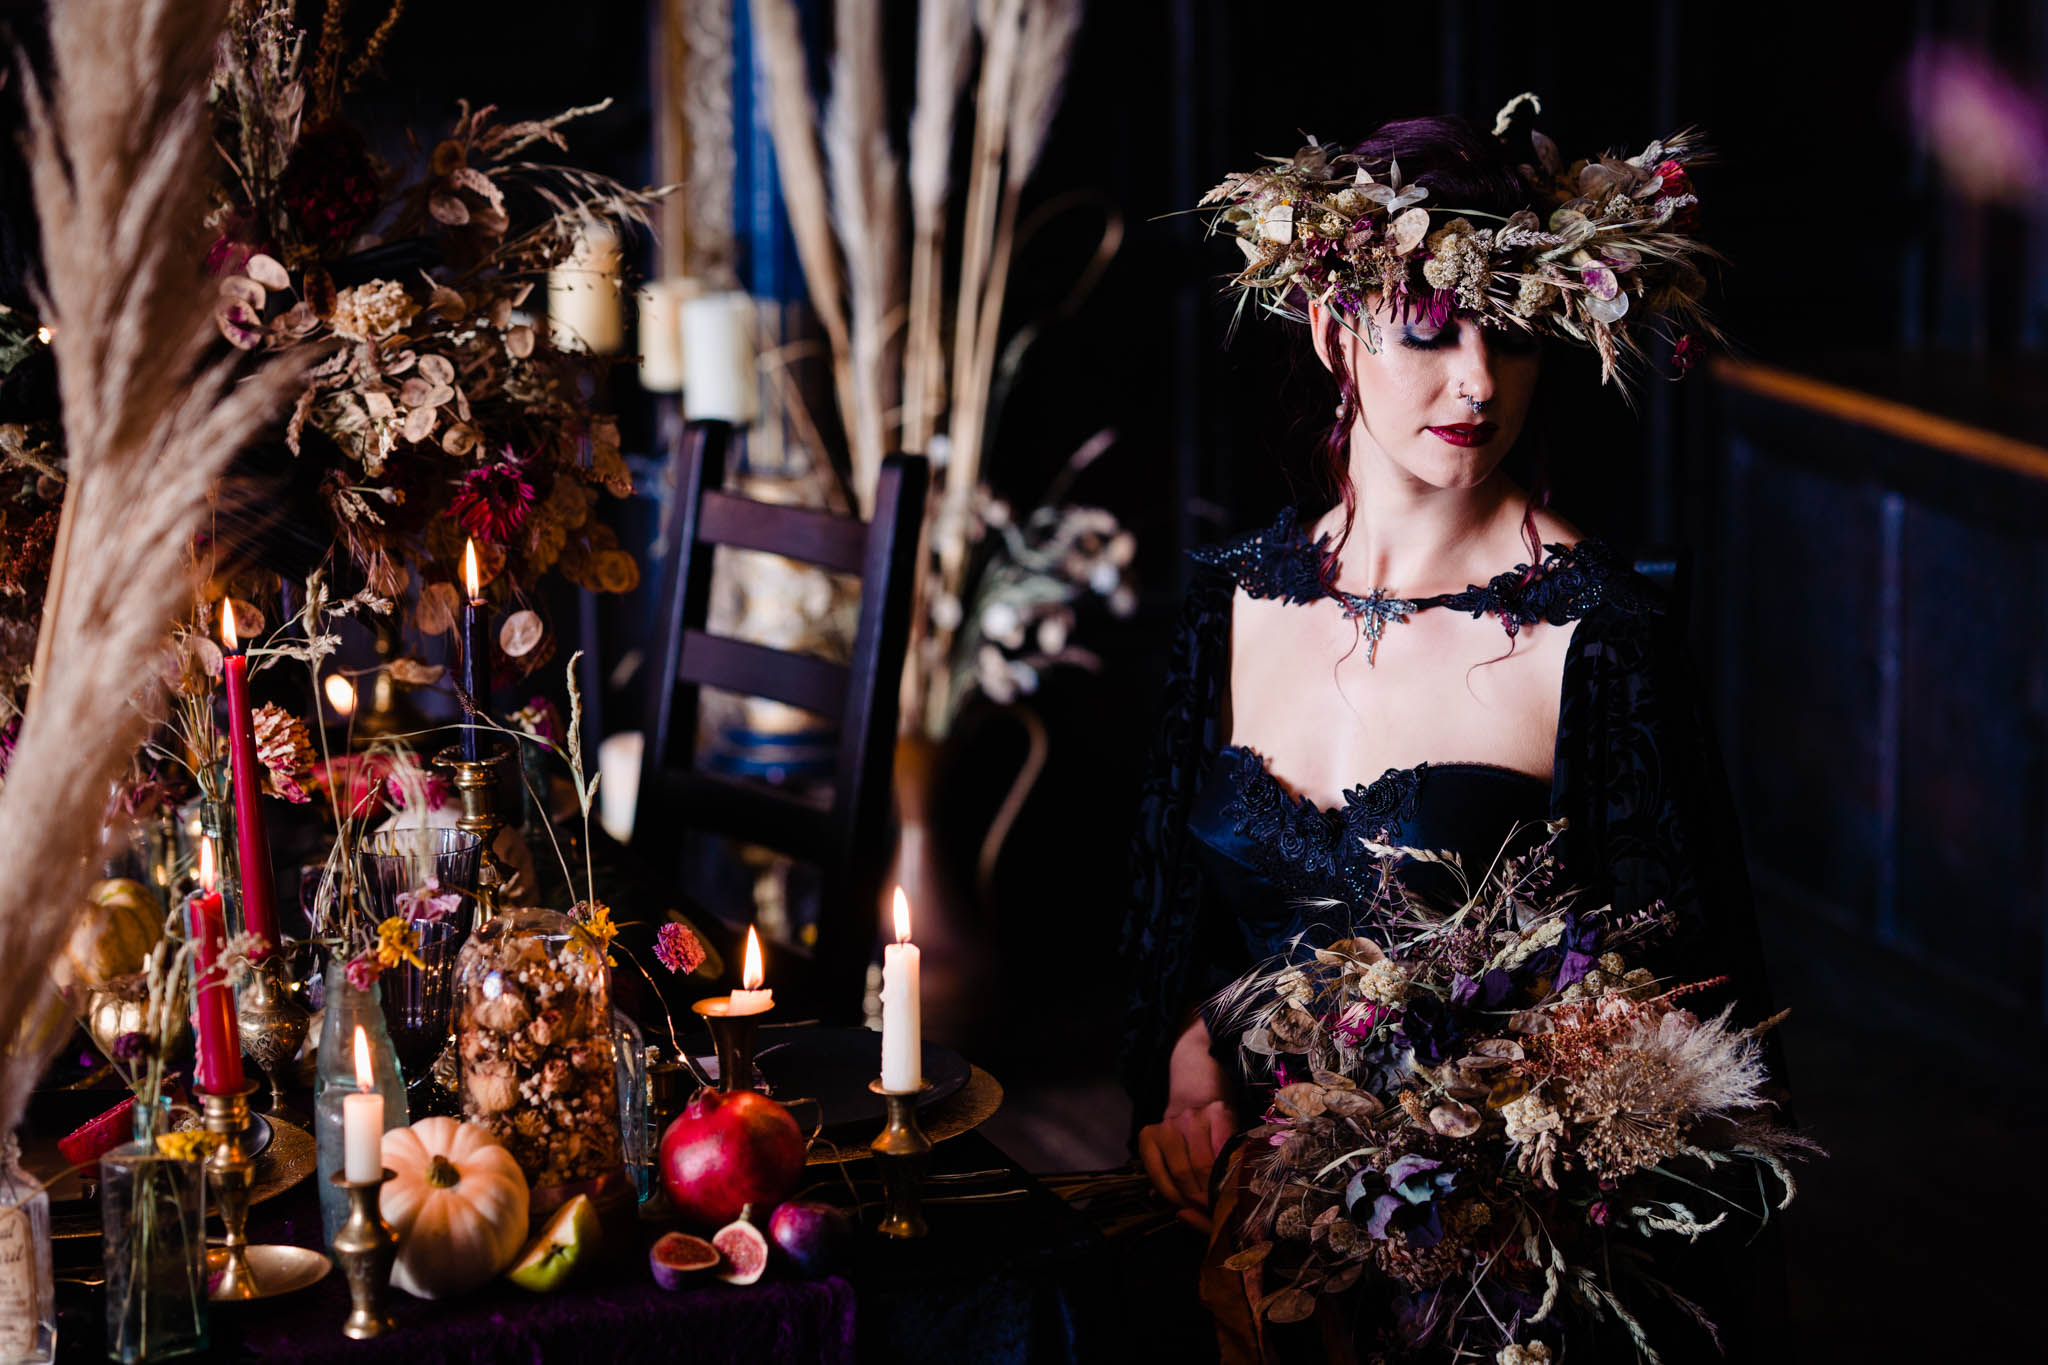 autumn wedding - gothic wedding - dark wedding - autumn wedding flowers - dried flower wedding decor - wedding flower crown